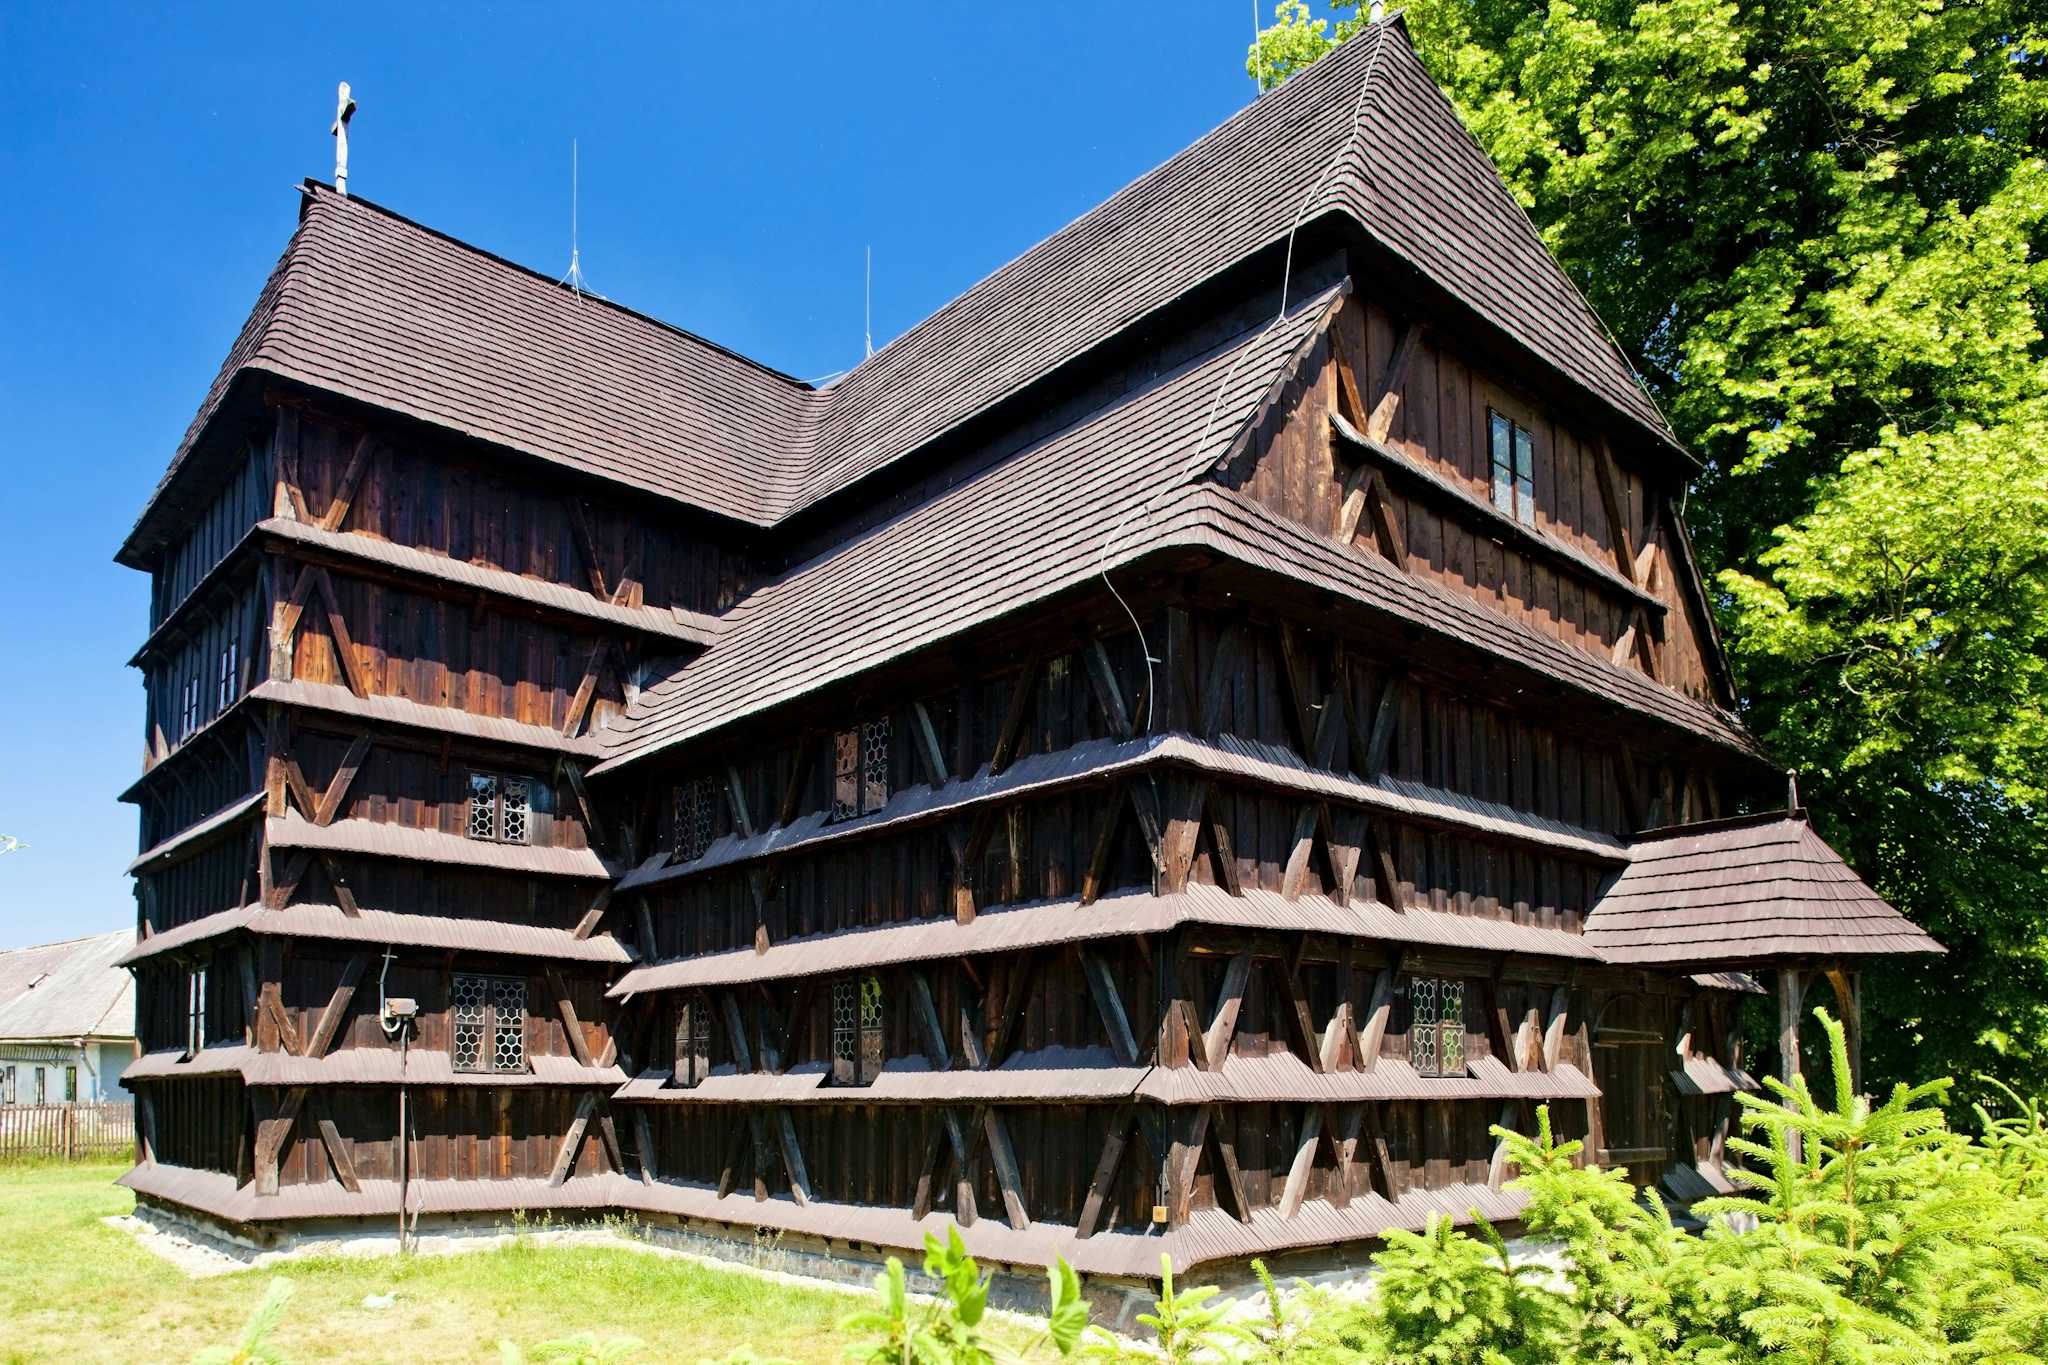 Hronsek Wooden Church